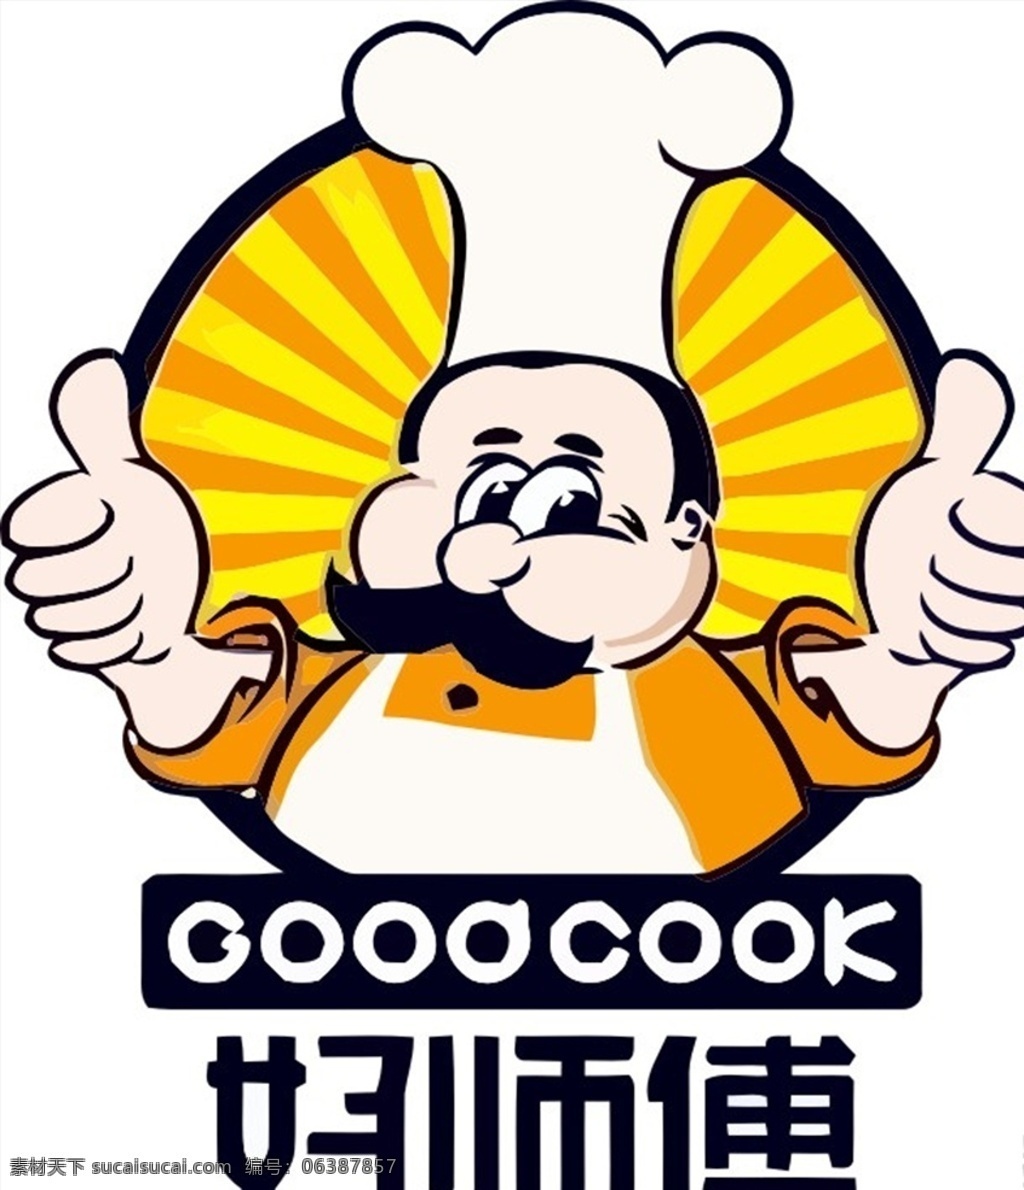 卡通师傅 卡通厨师 厨师 卡通标志 餐饮 餐饮厨师 面包师傅 面包厨师 人物图库 职业人物